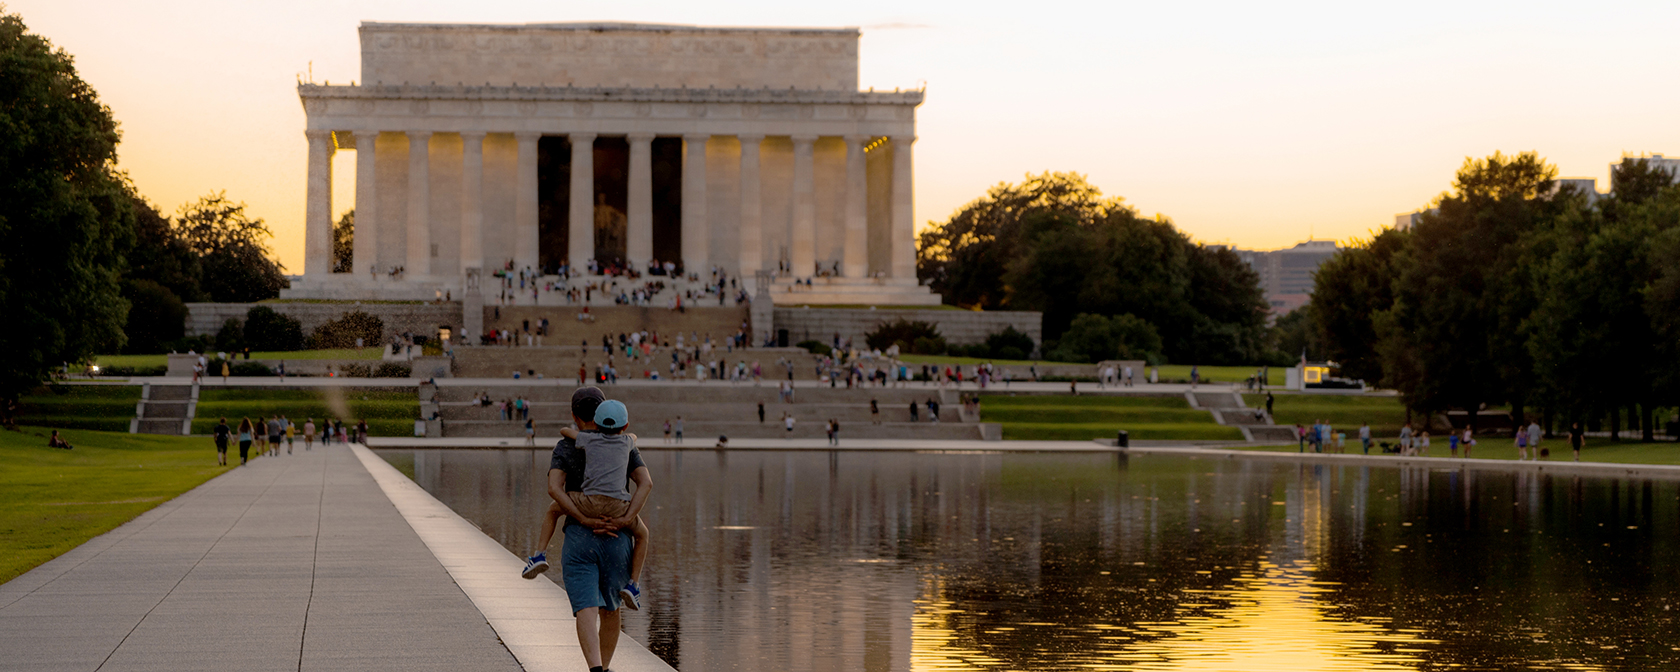 Família caminhando no Lincoln Memorial